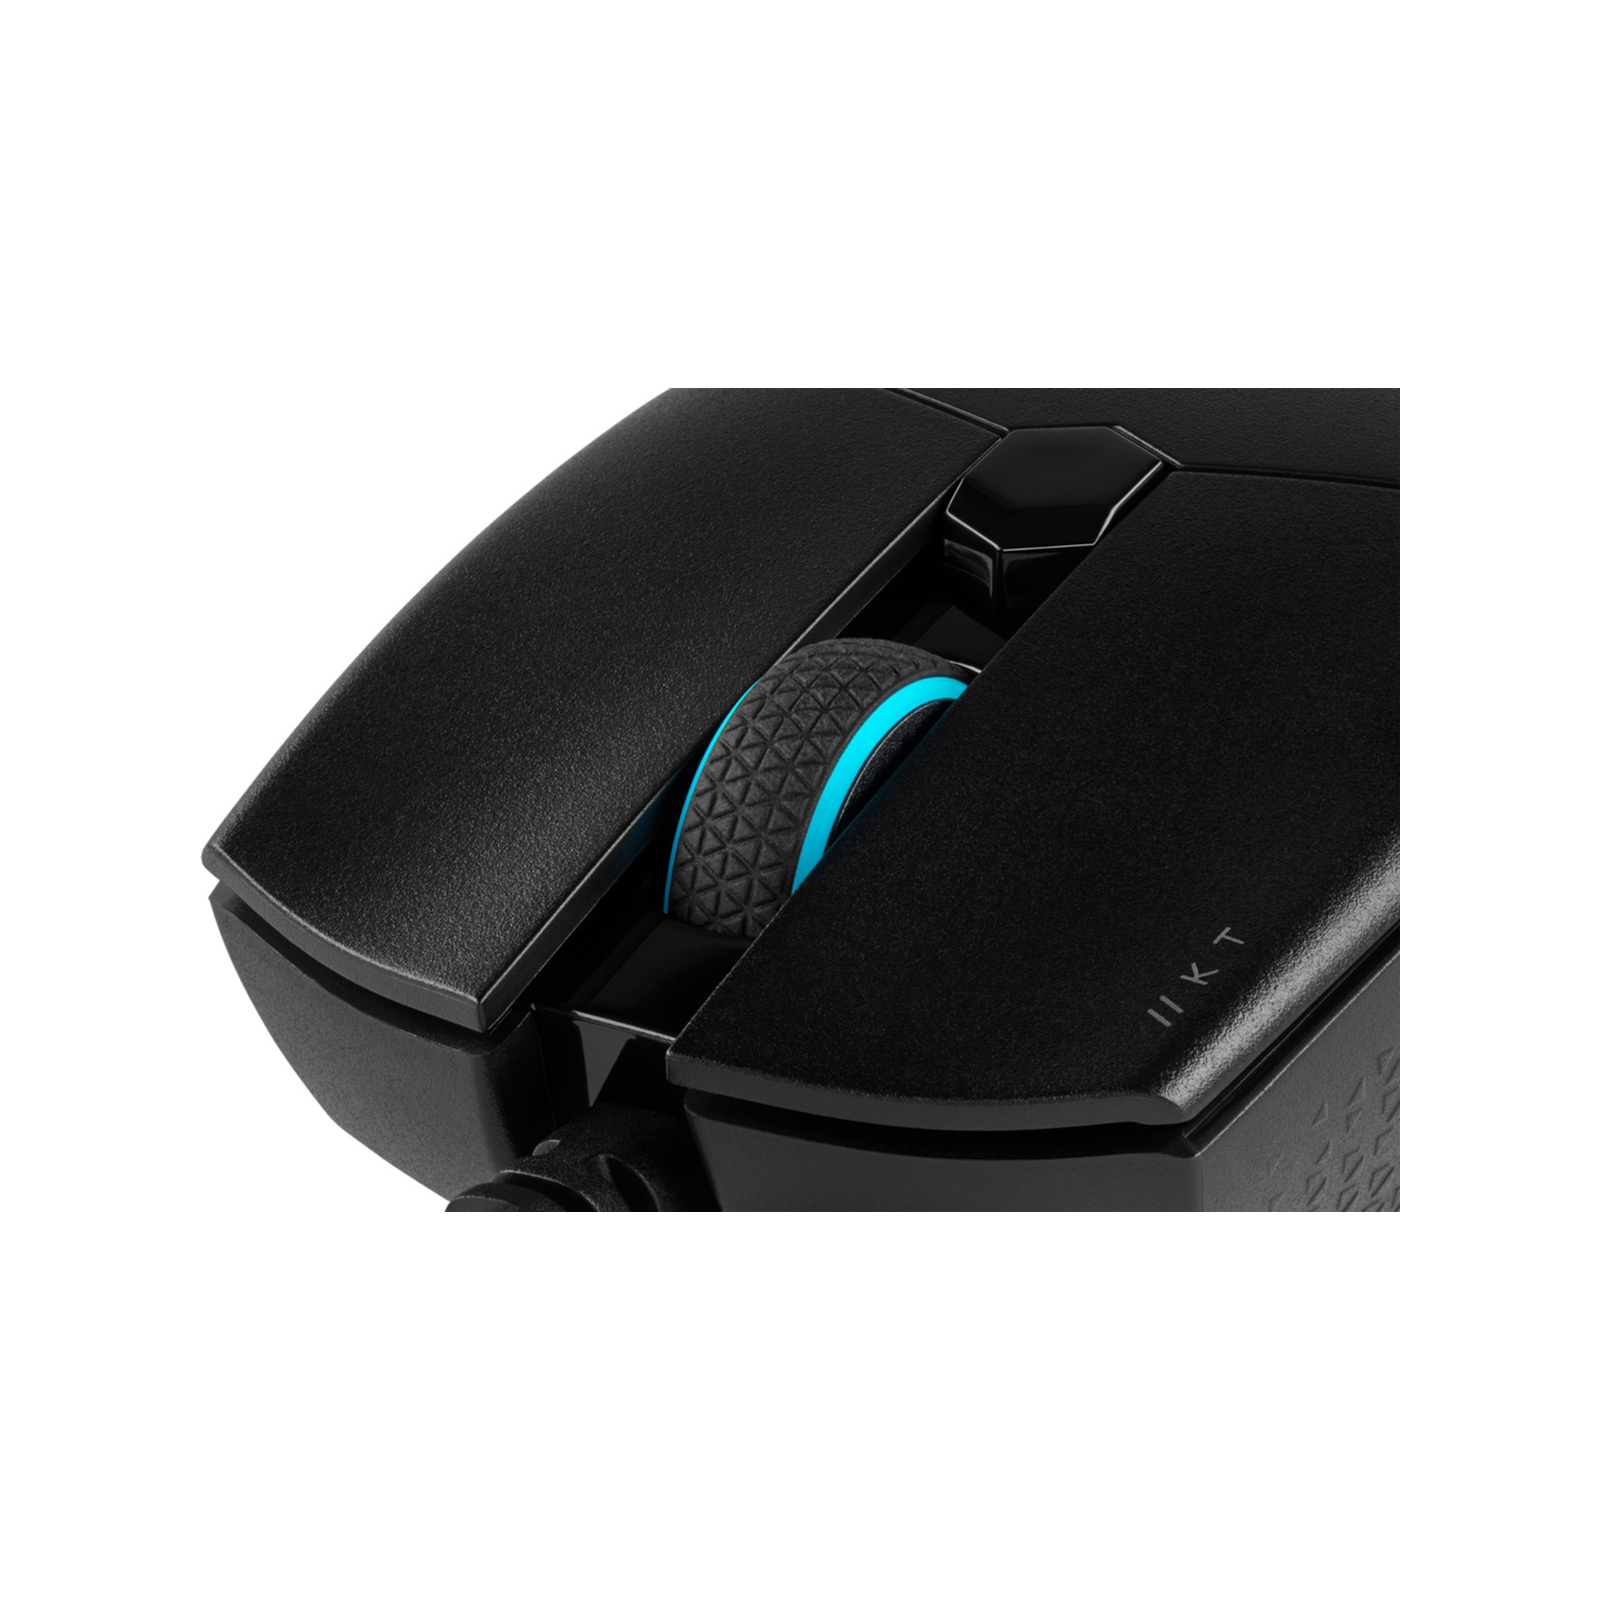 Мышка Corsair Katar Pro USB Black (CH-930C011-EU) изображение 10